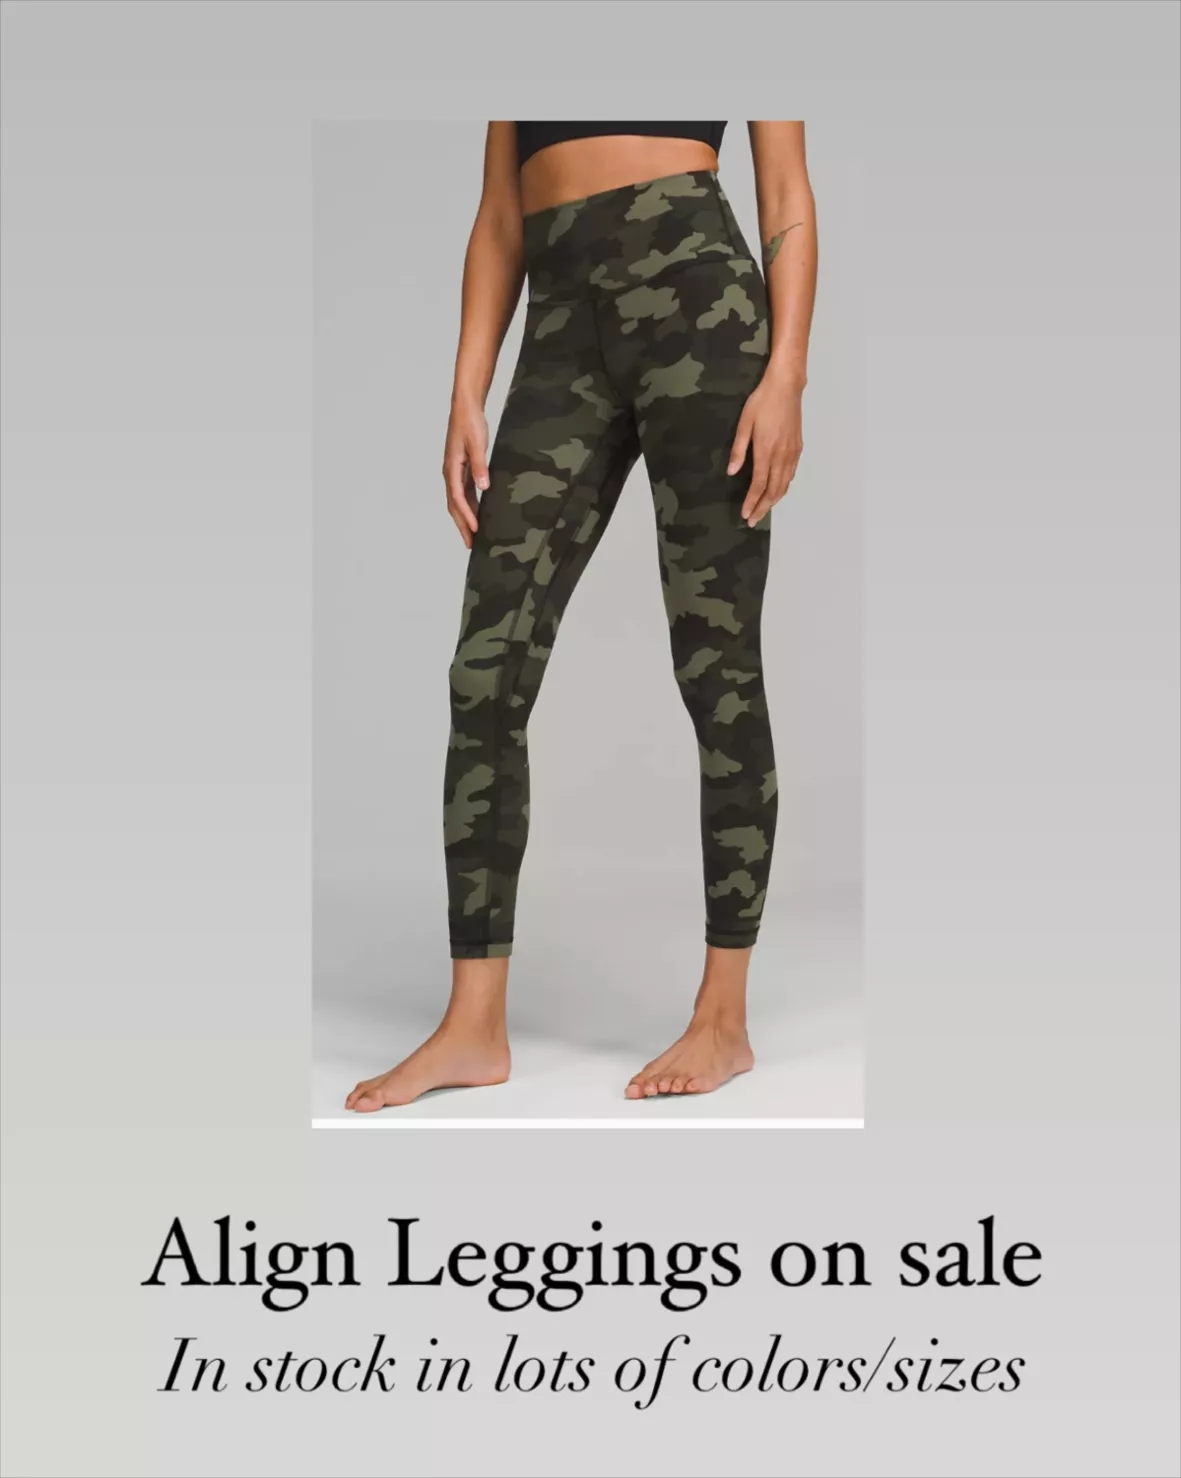 Alo Yoga High-Waist Camo Leggings curated on LTK